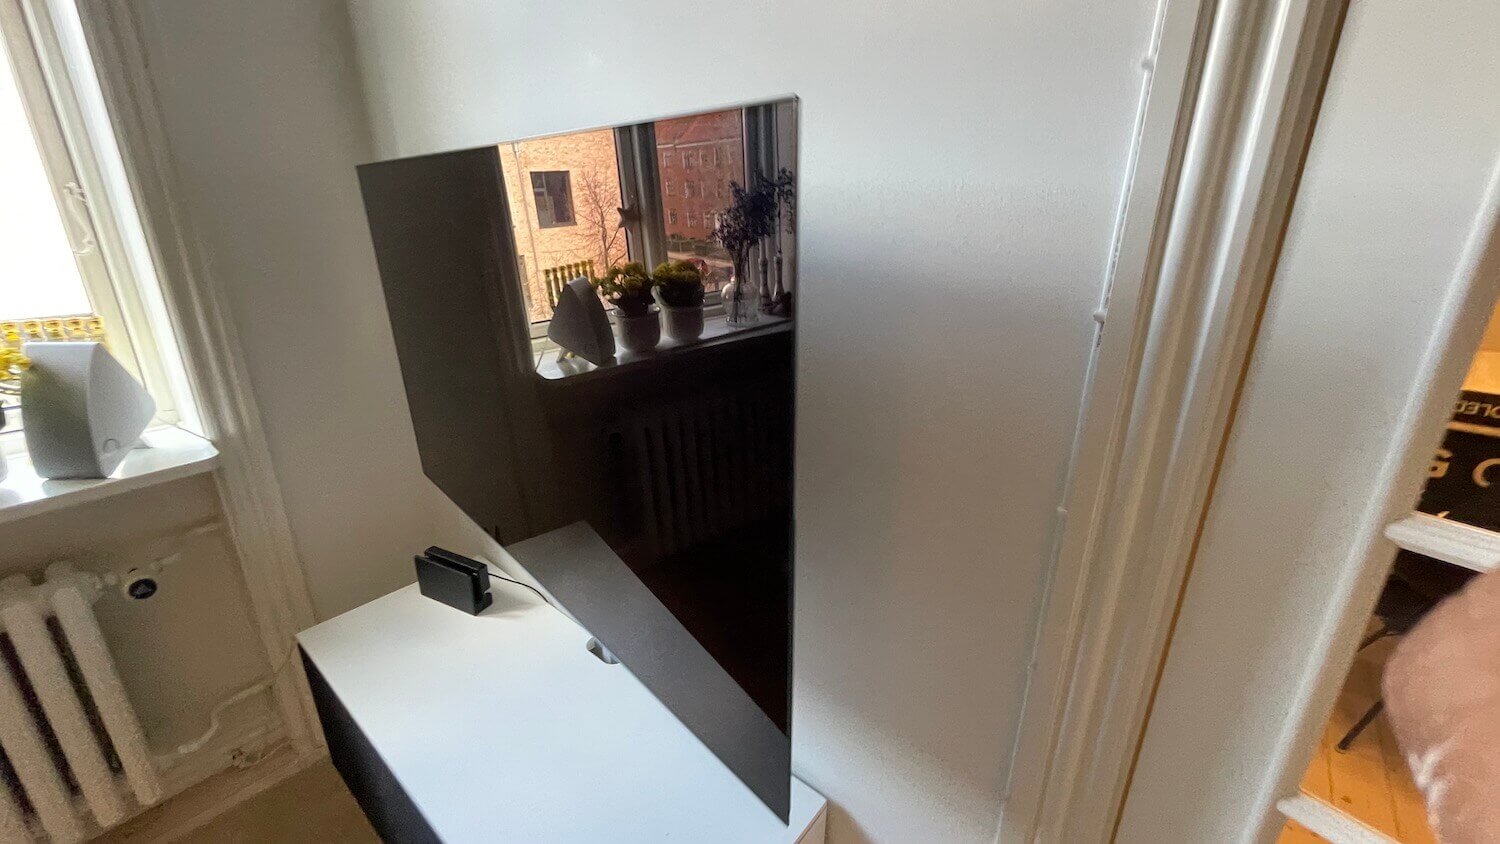 Ophængning af 55 LG OLED TV på et vægbeslag med drejefunktion